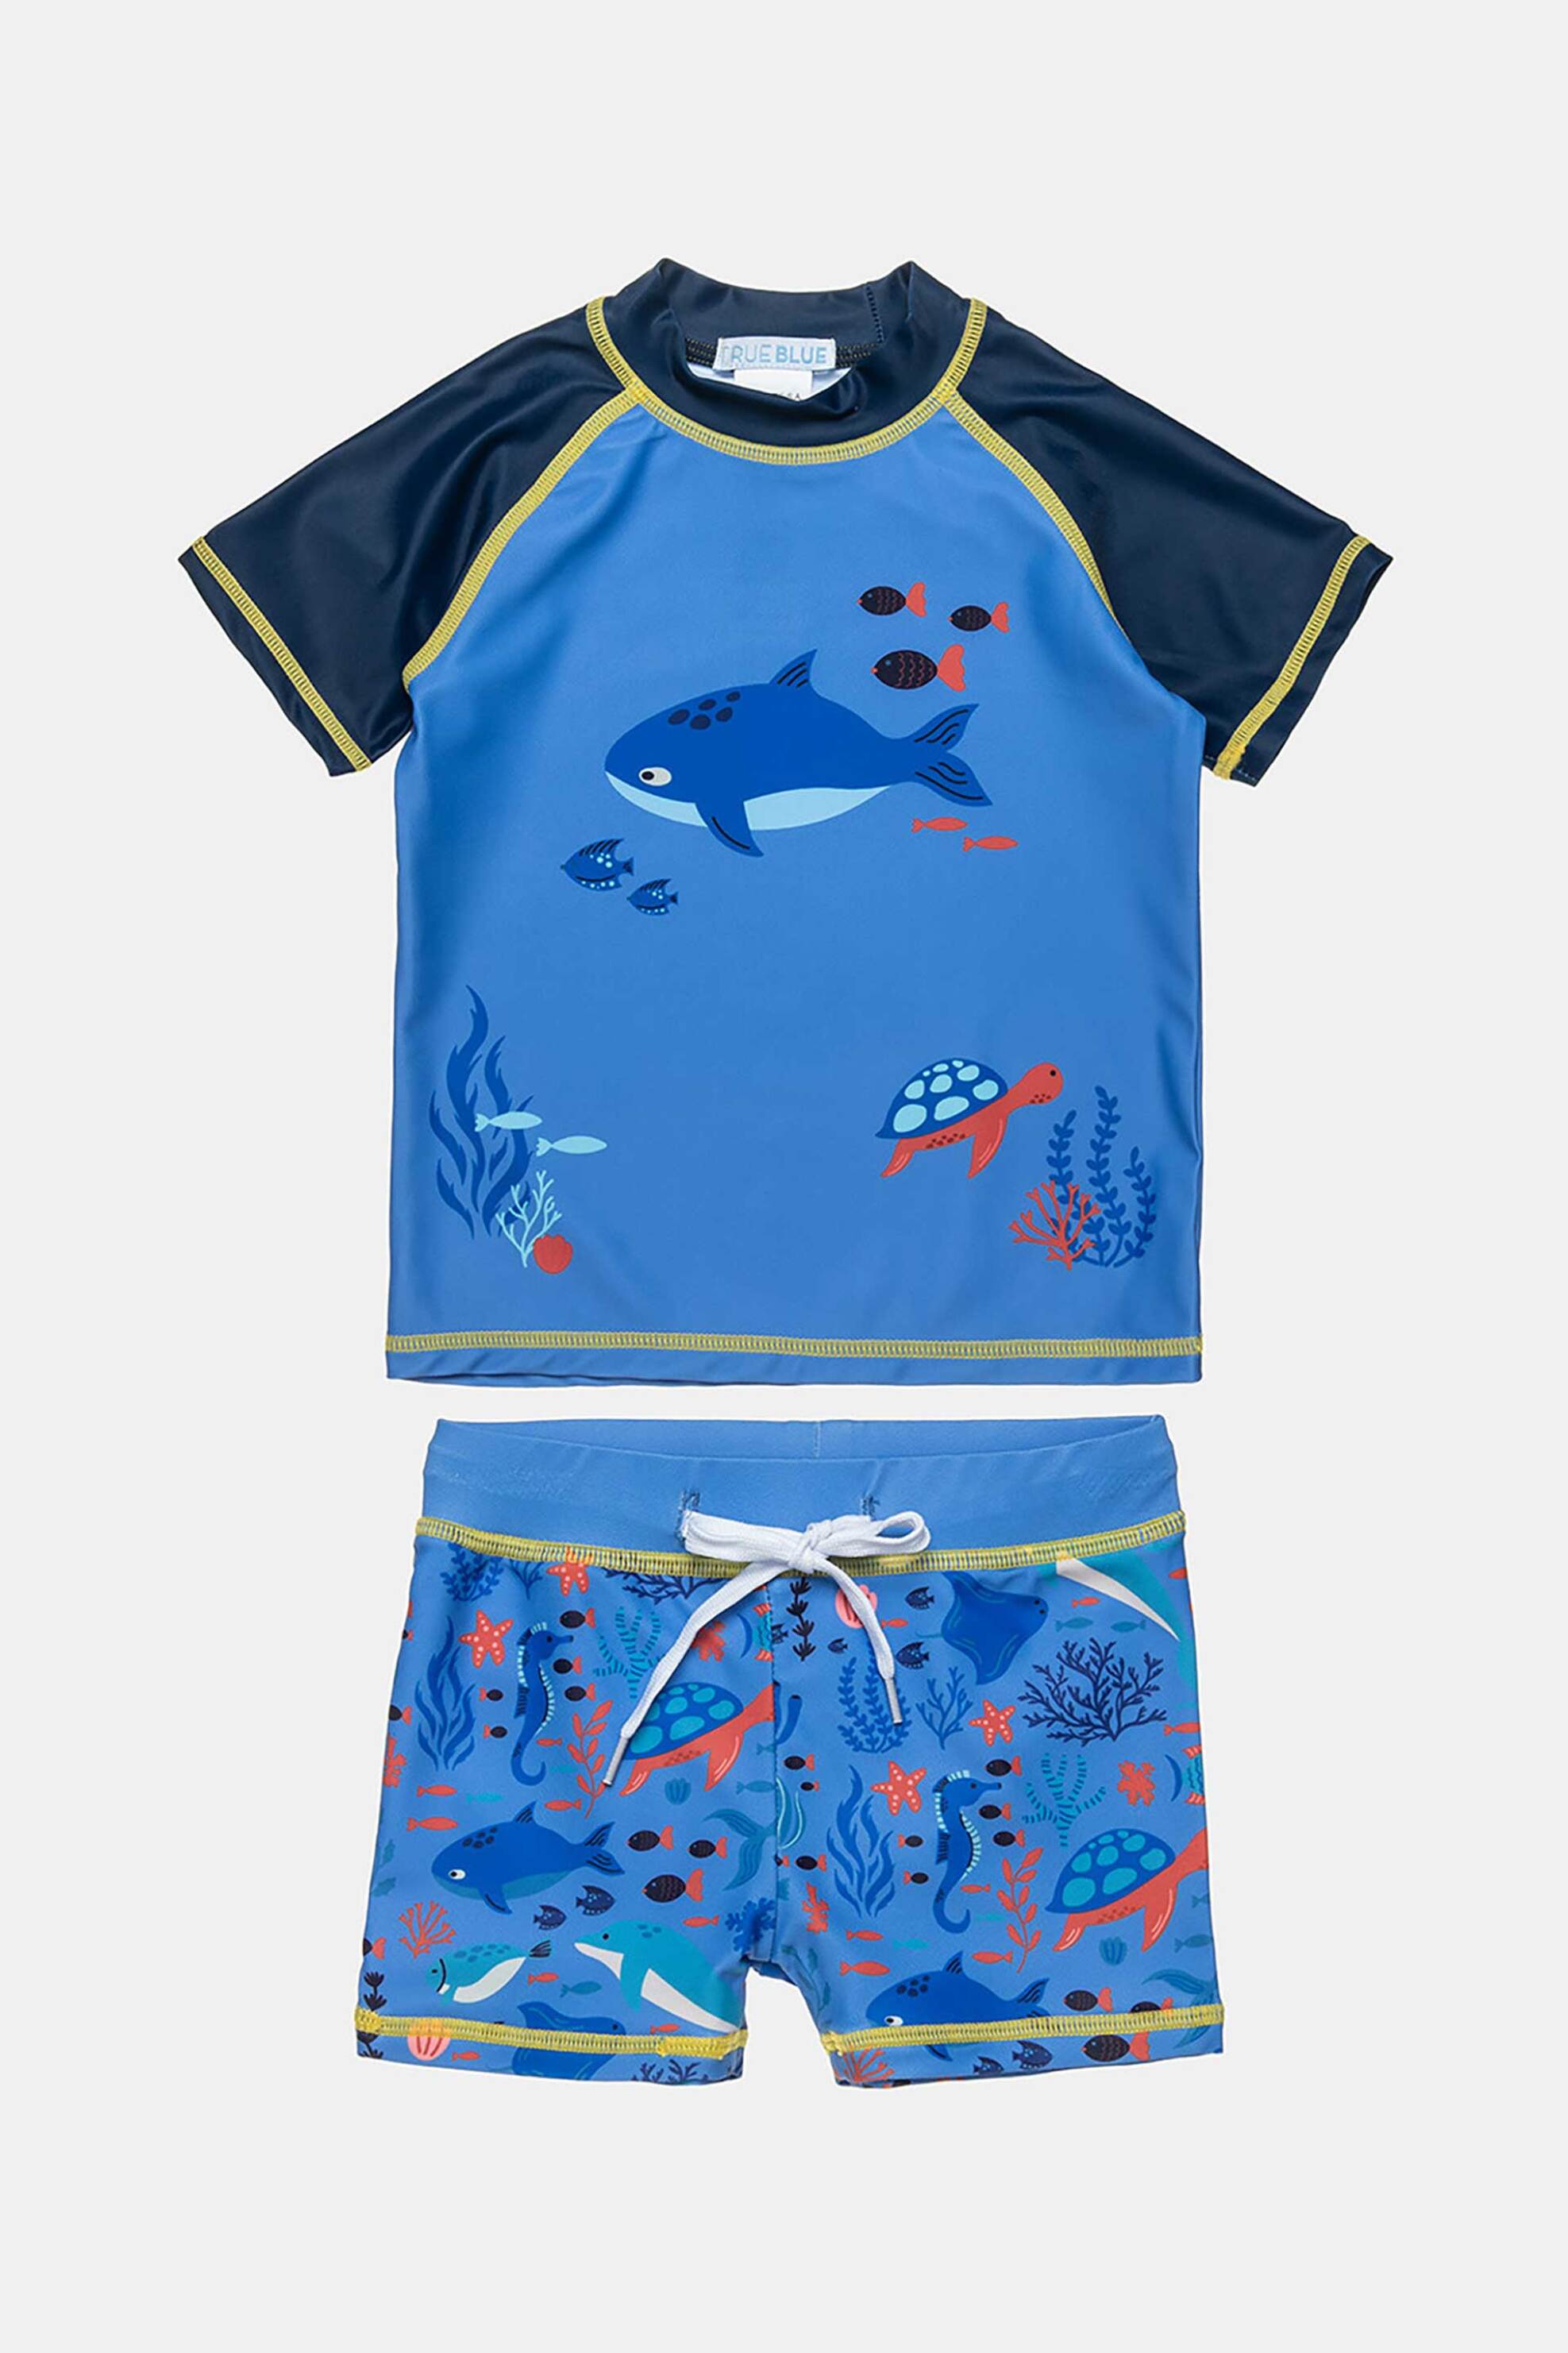 Alouette παιδικό σετ μαγιό μπλούζα και σορτς με θέμα τη ζωή κάτω απο τη θάλασσα 